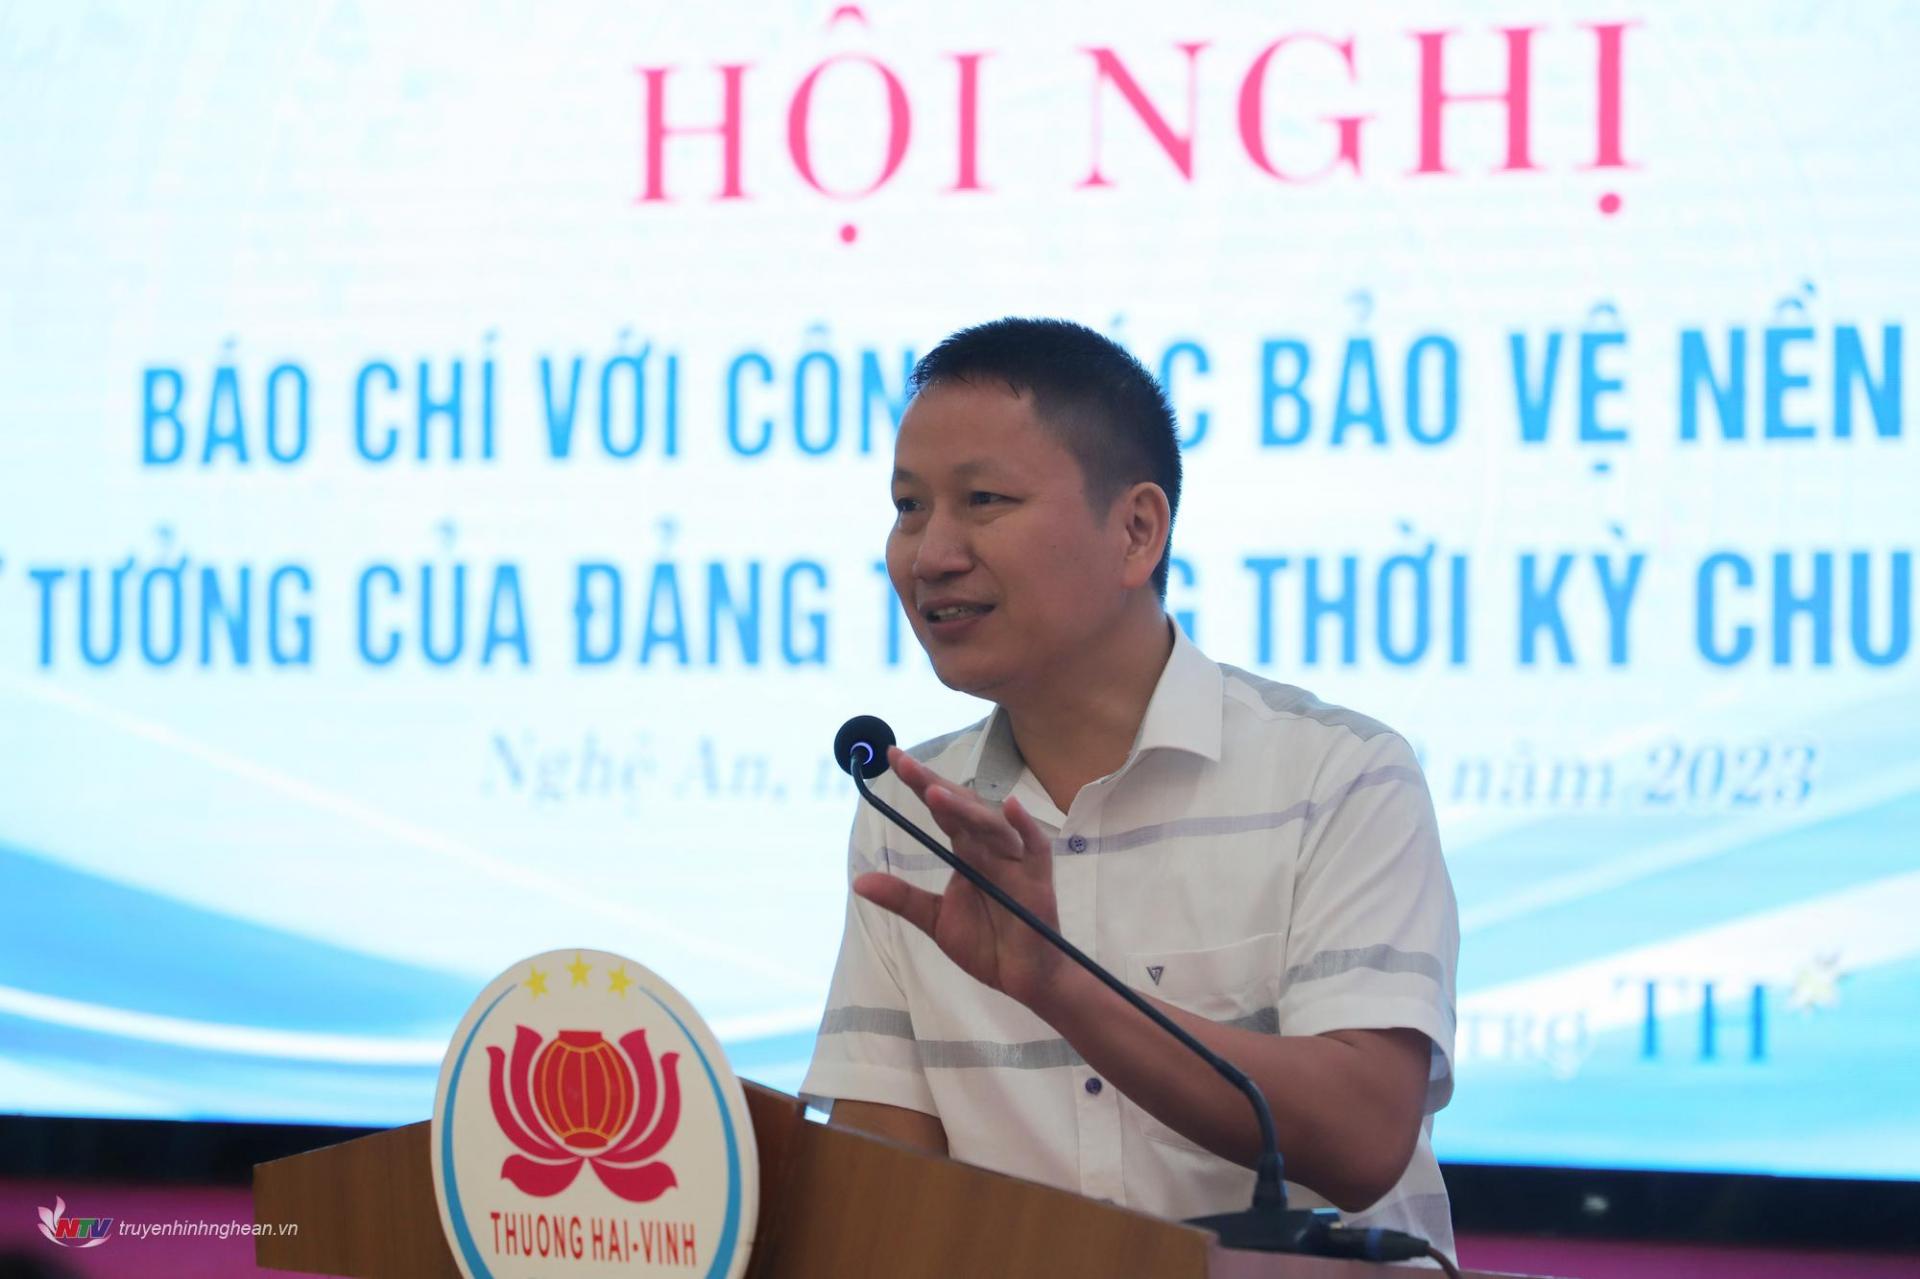 Thượng tá Phan Đăng Trường, Phó Tổng Biên tập Báo Công an nhân dân tham luận về tổ chức mảng bài viết chống “diễn biến hòa bình”, phương pháp để thực hiện bài viết hay, thu hút người đọc